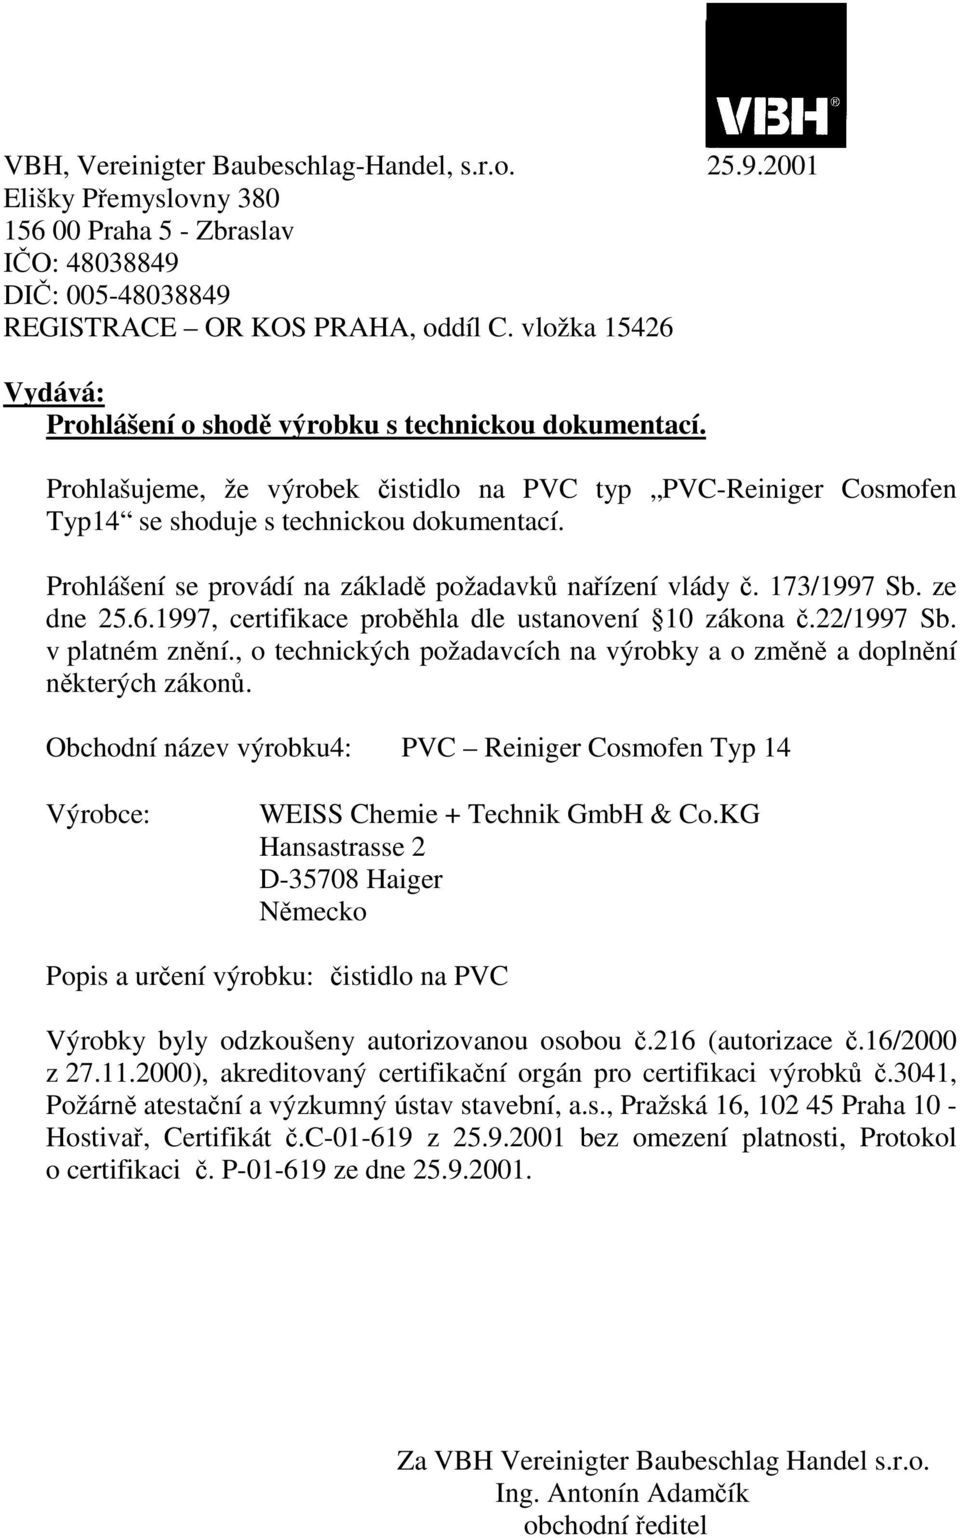 Obchodní název výrobku4: PVC Reiniger Cosmofen Typ 14 Popis a urení výrobku: